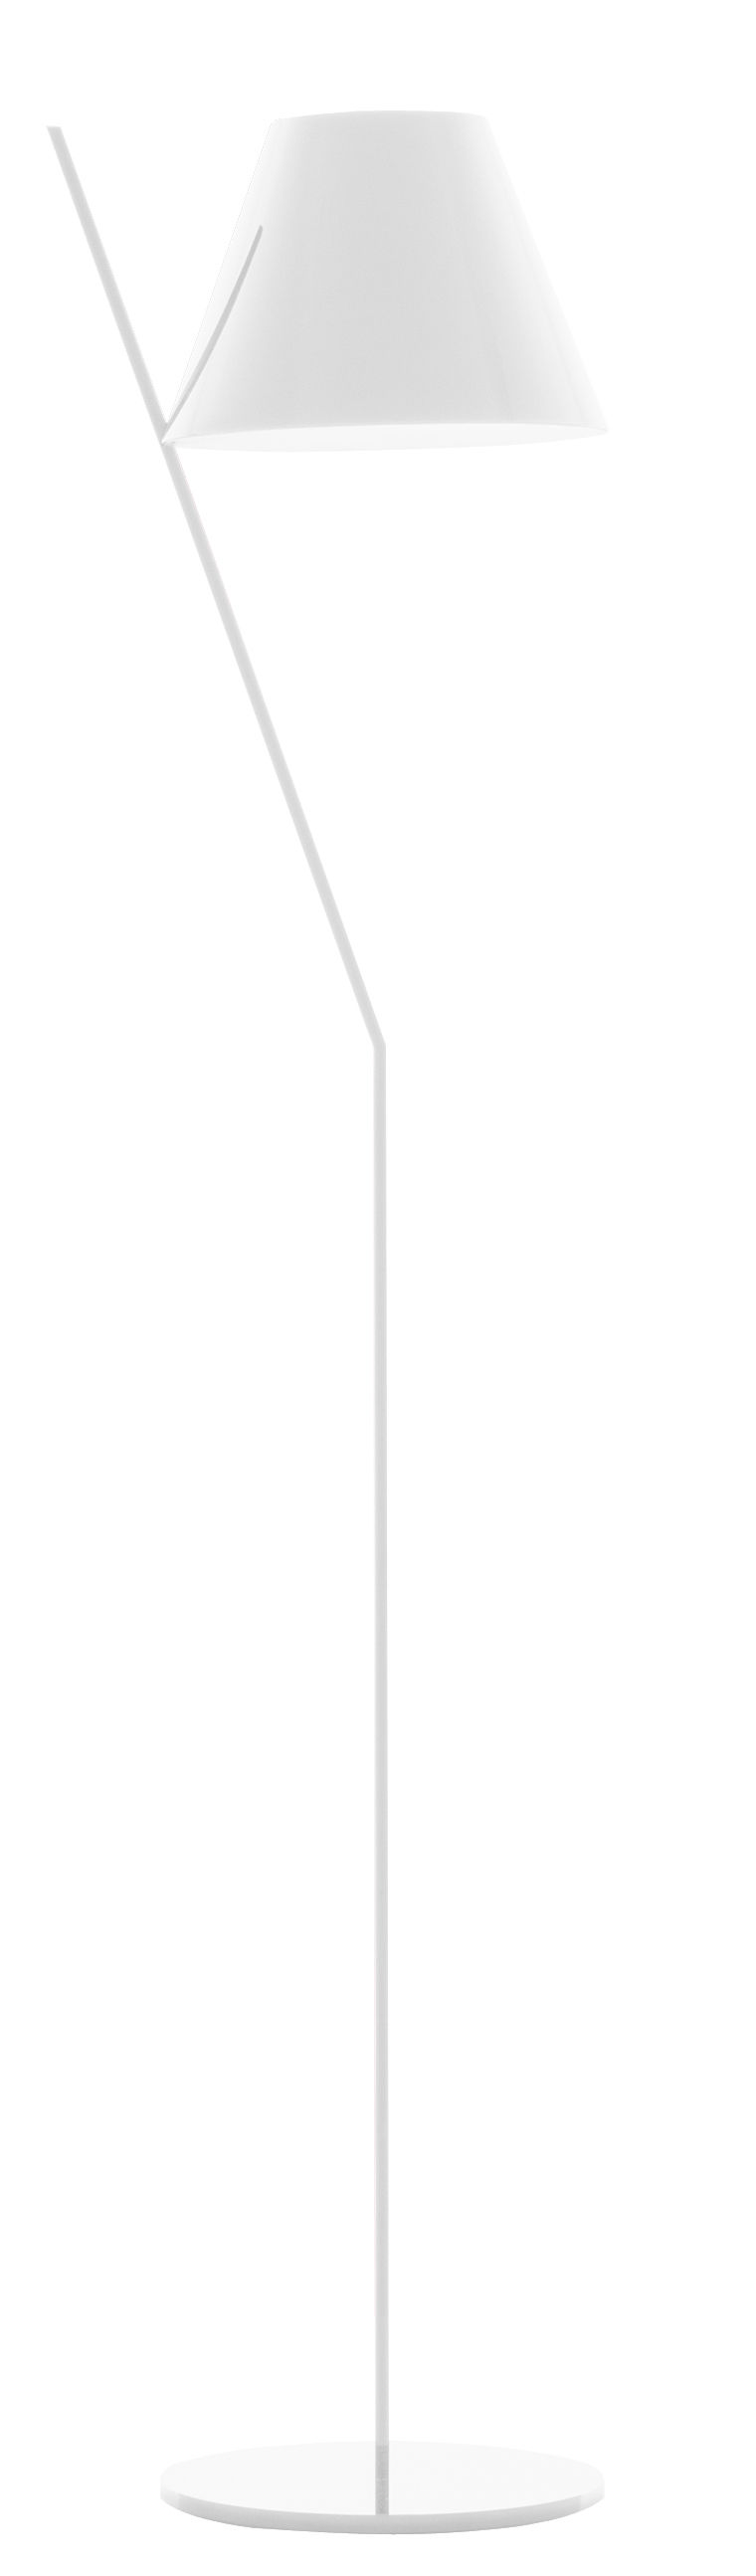 Lampadaire La Petite / H 160 cm - Artemide blanc en métal/matière plastique